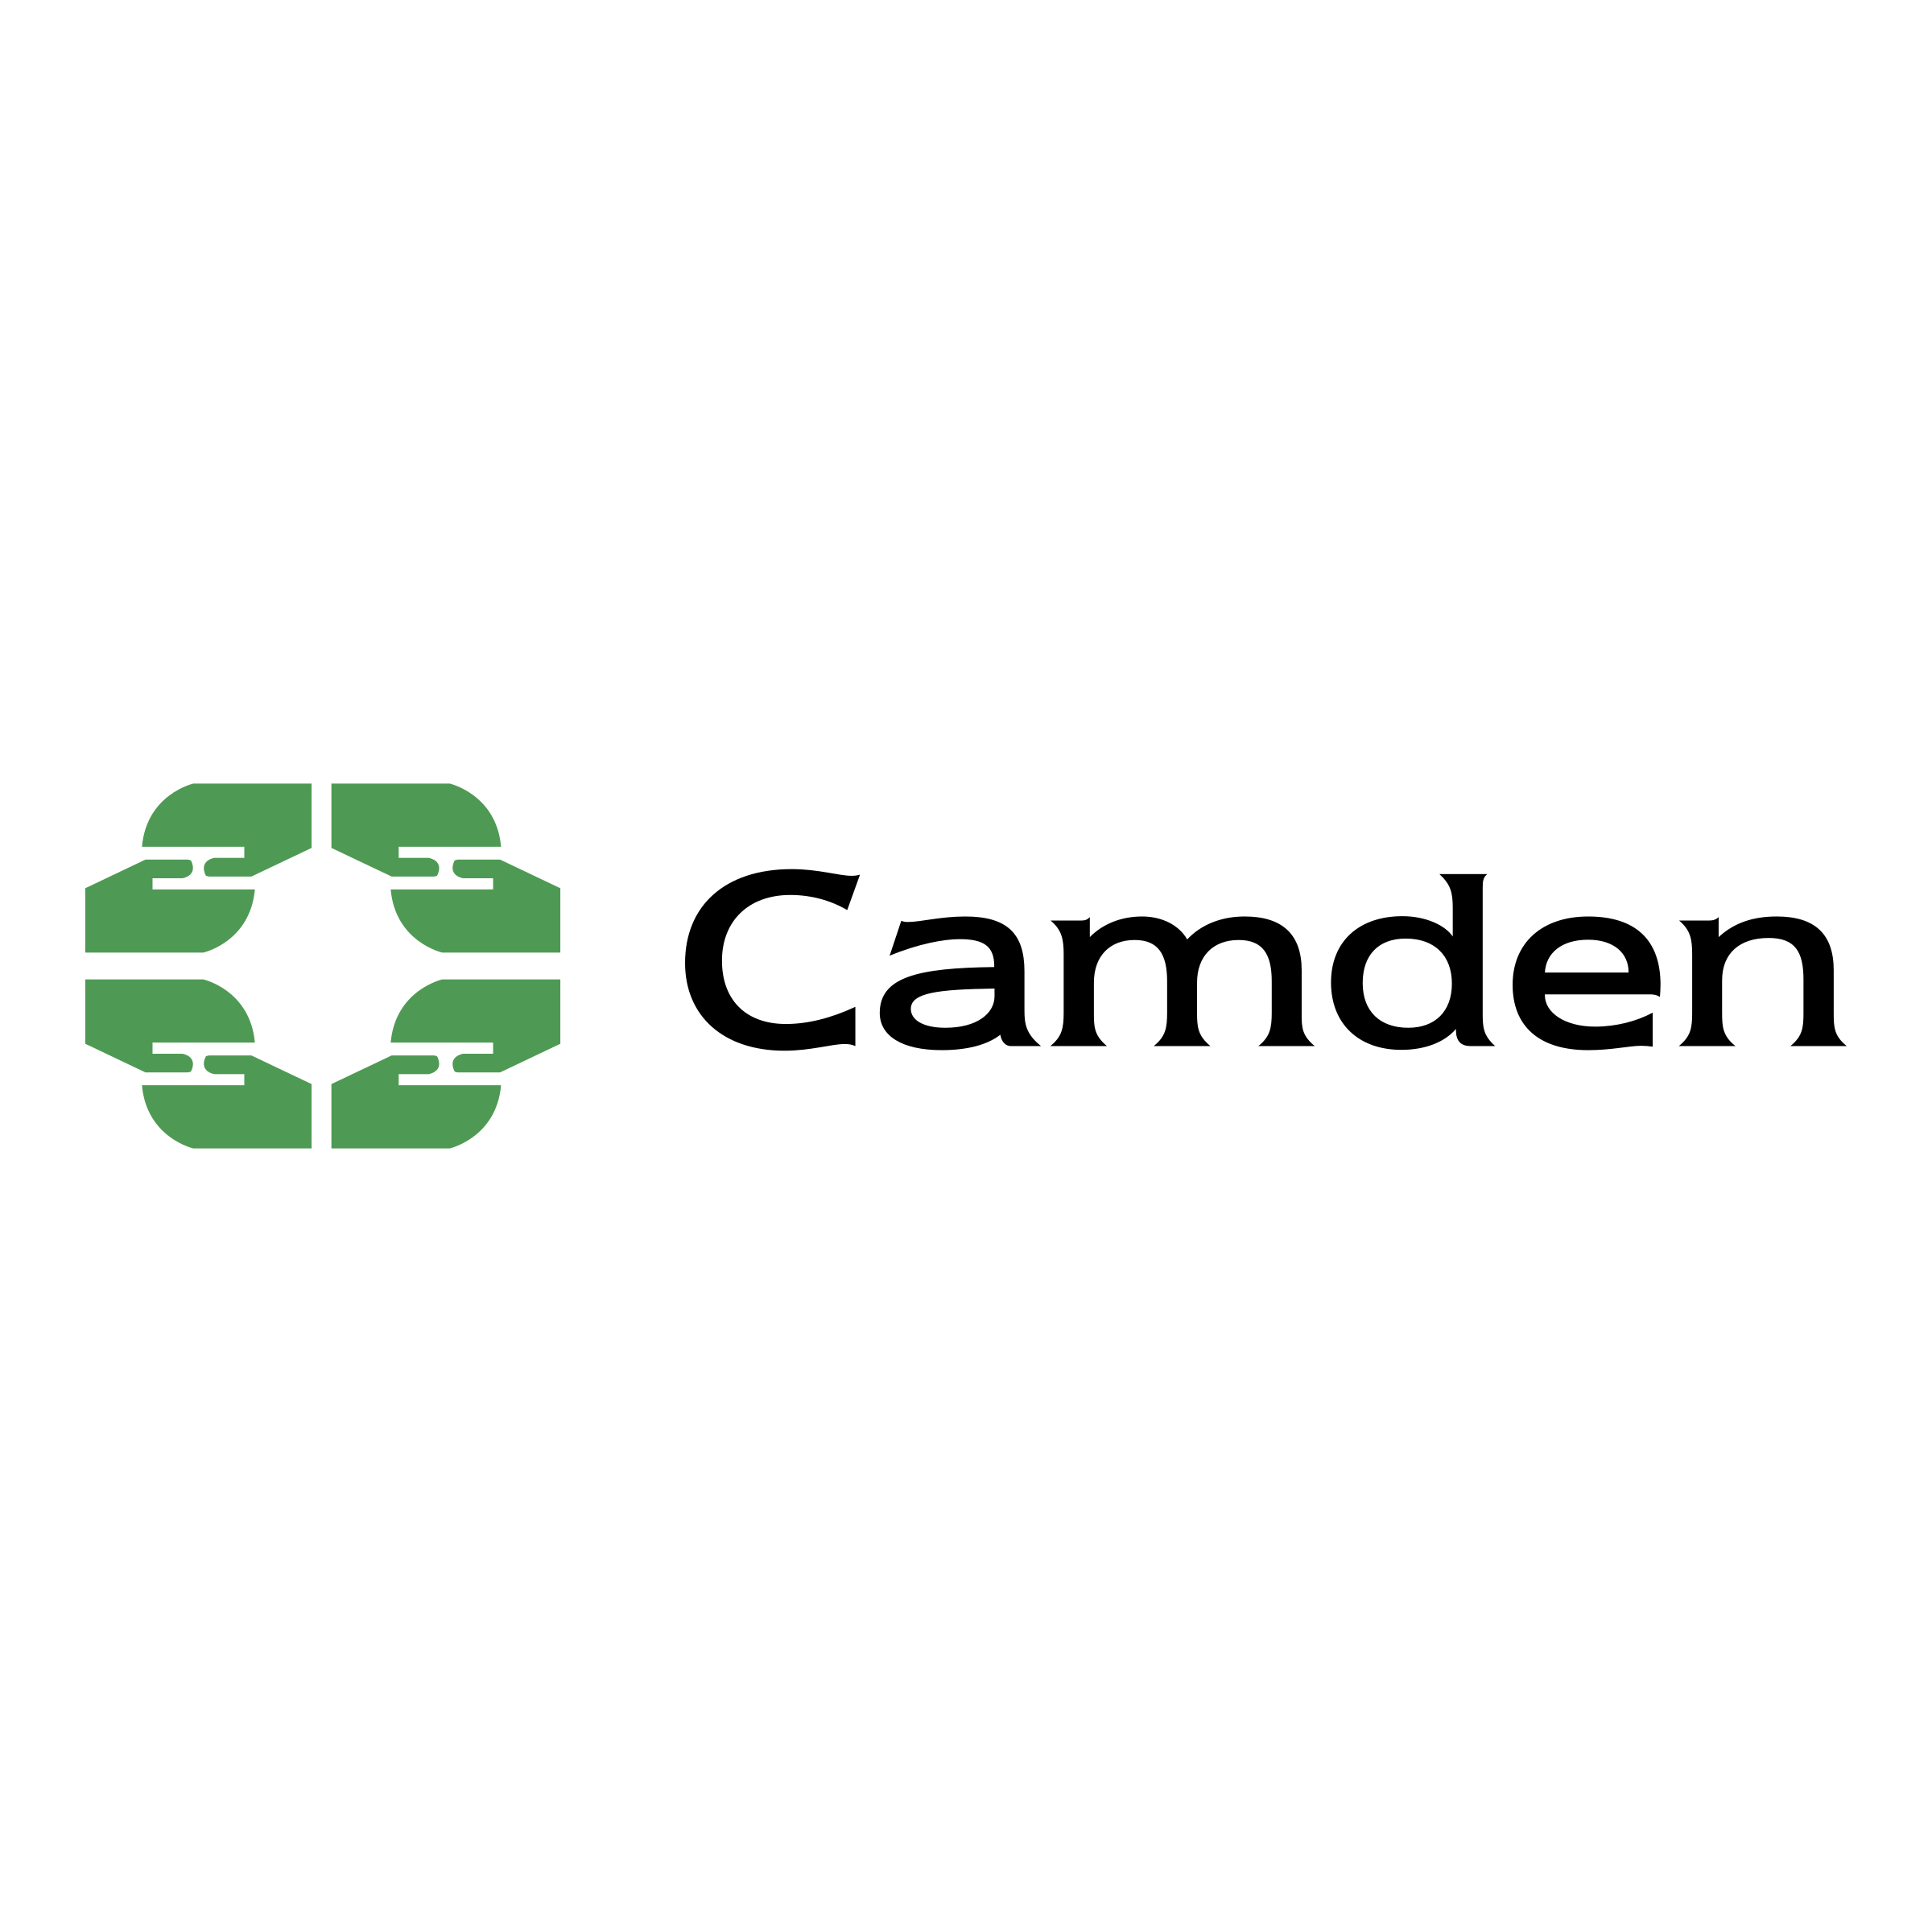 camden-council-logo-png-transparent.png